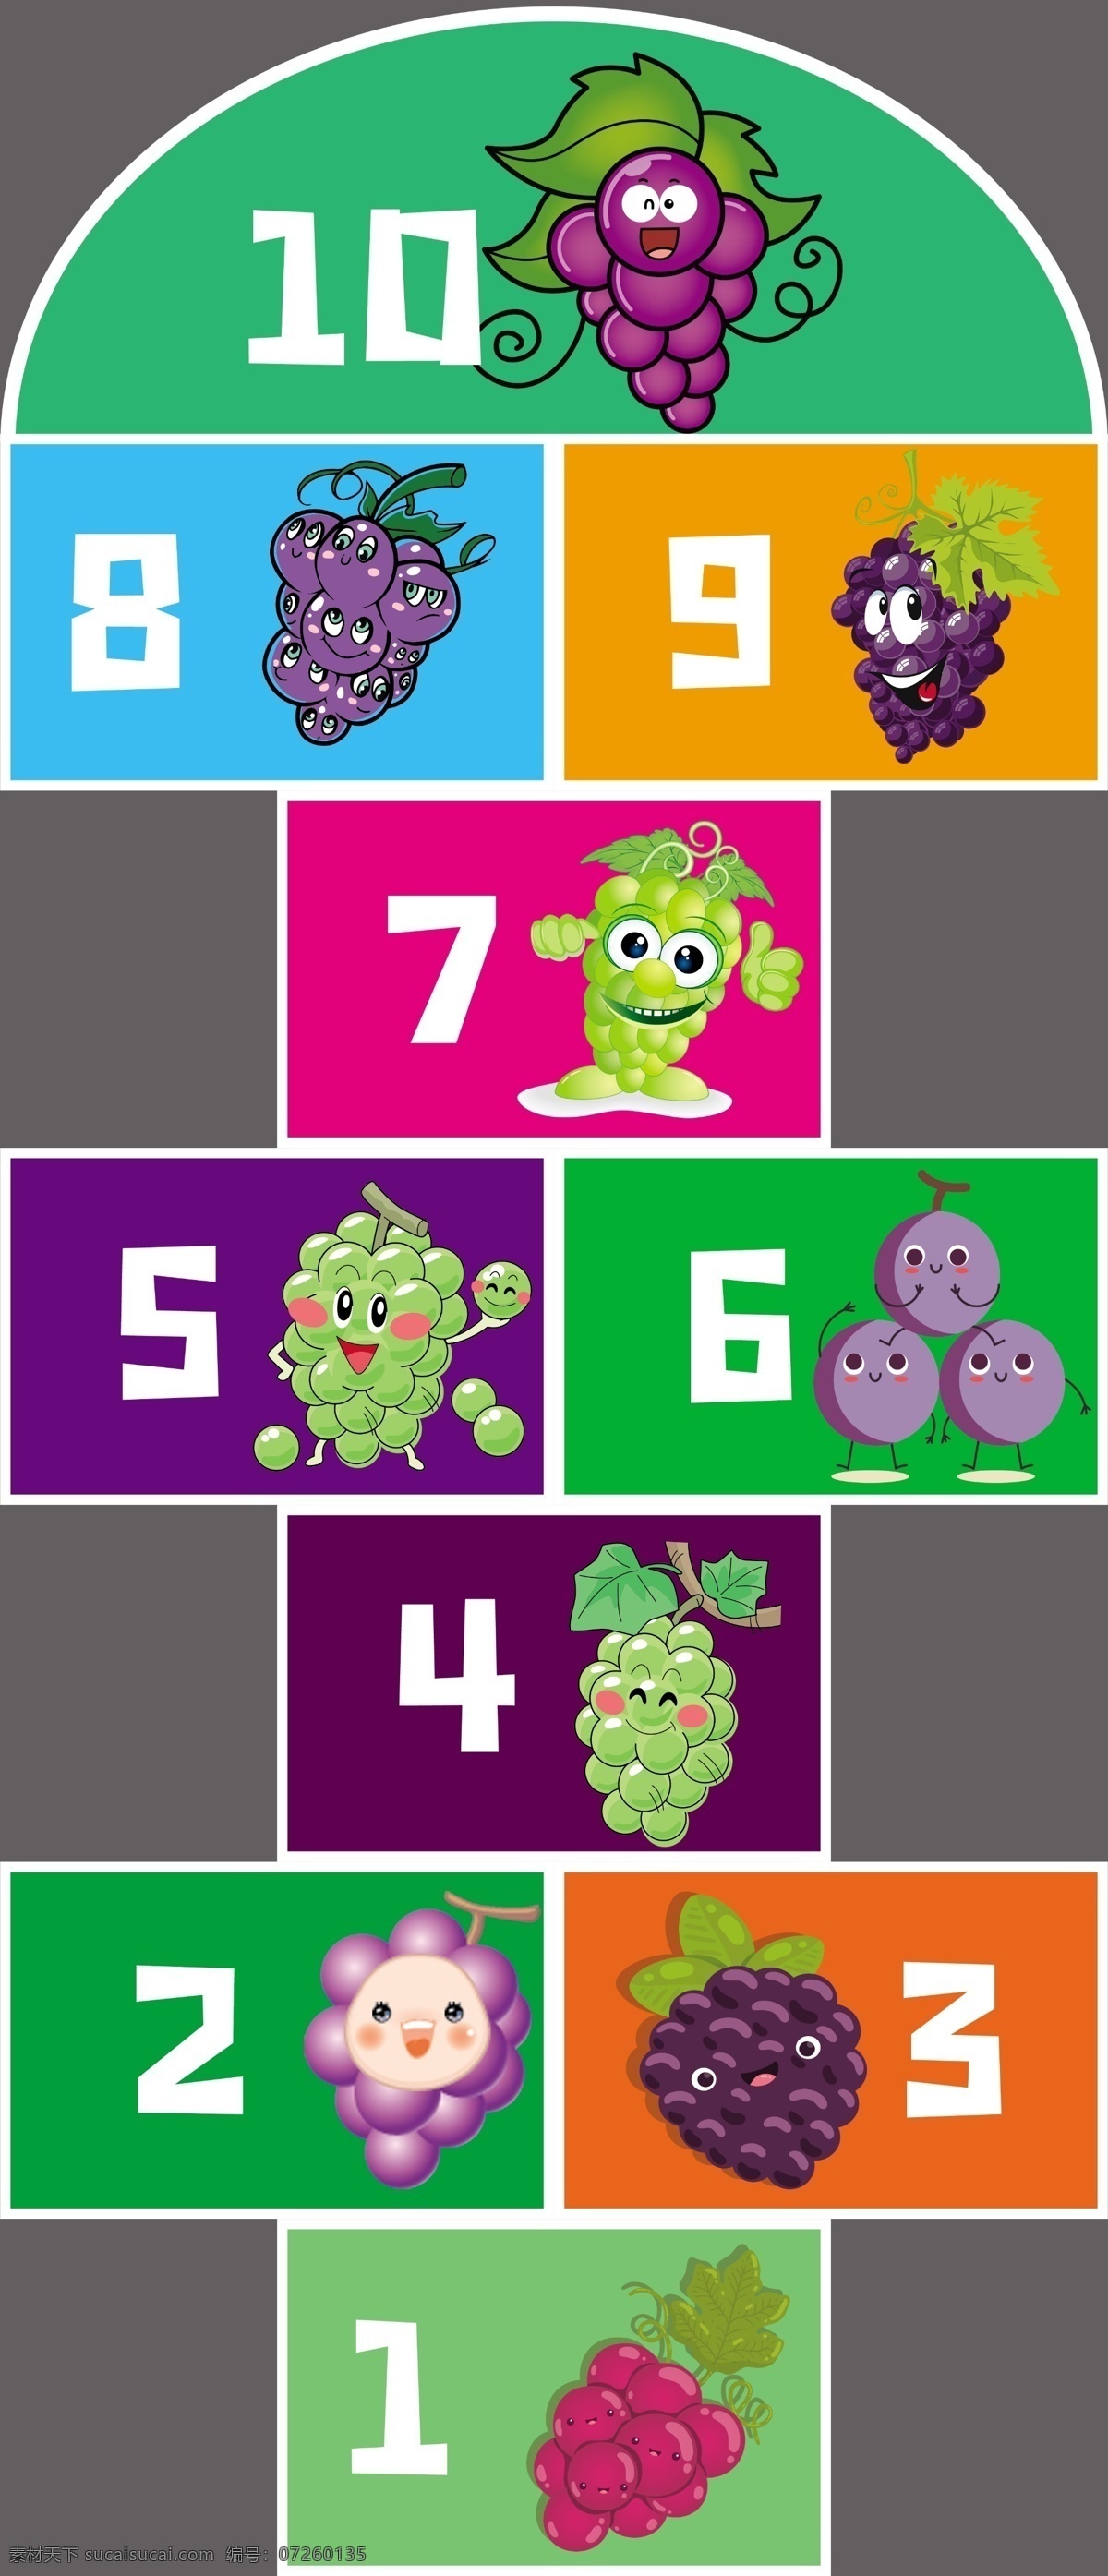 跳格子 玩游戏 游戏 健身 暖场 活动 儿童 水果 葡萄 运动 少儿 成人 道具